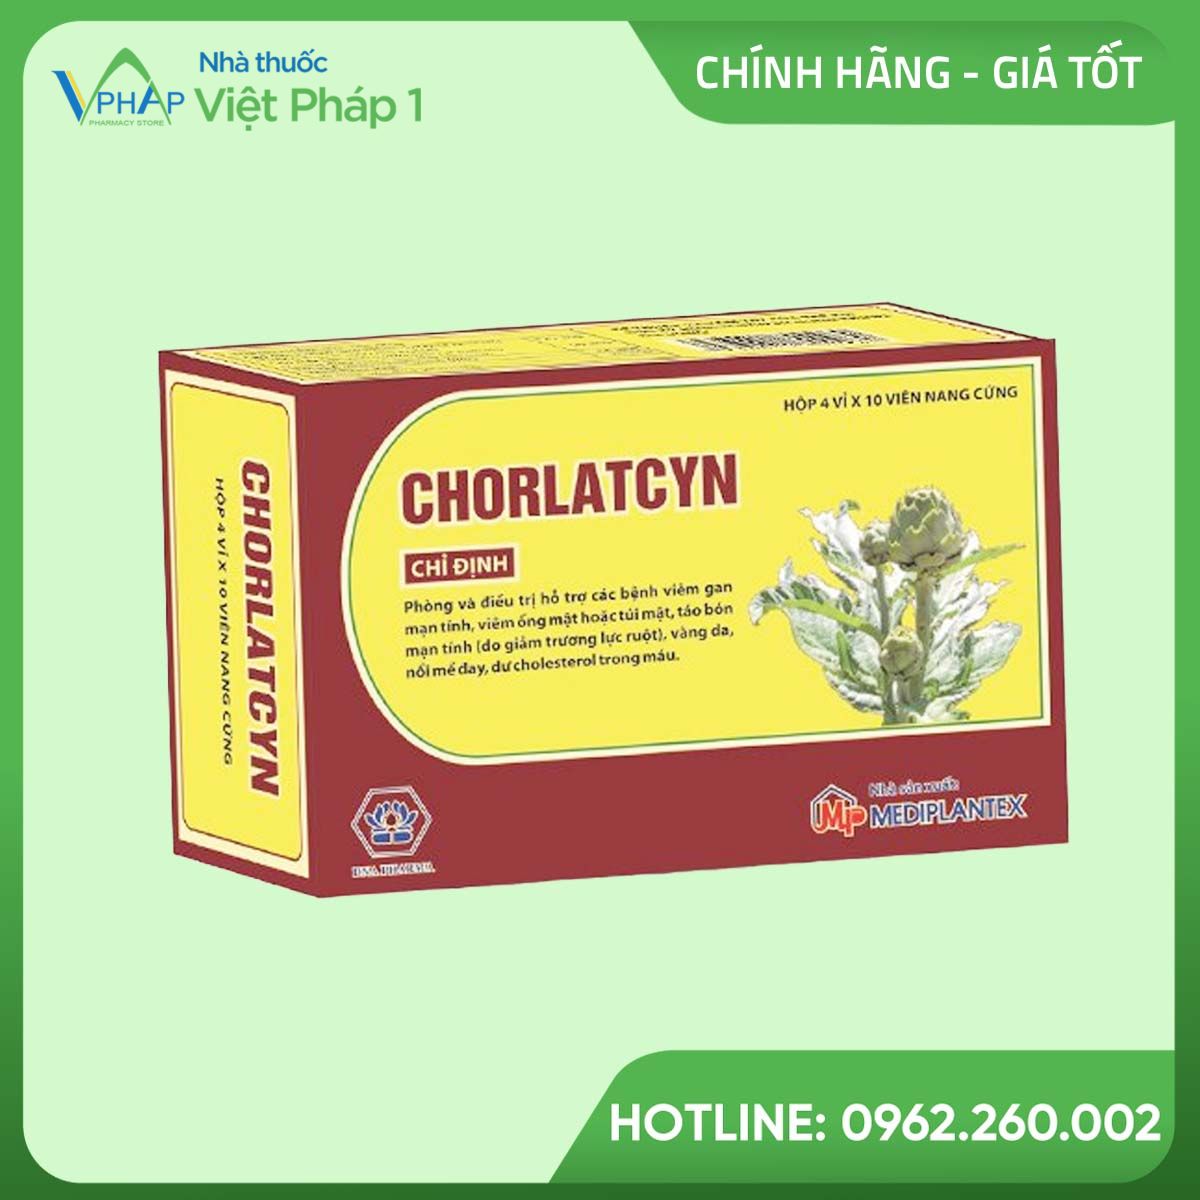 Hình ảnh hộp thuốc Chorlatcyn